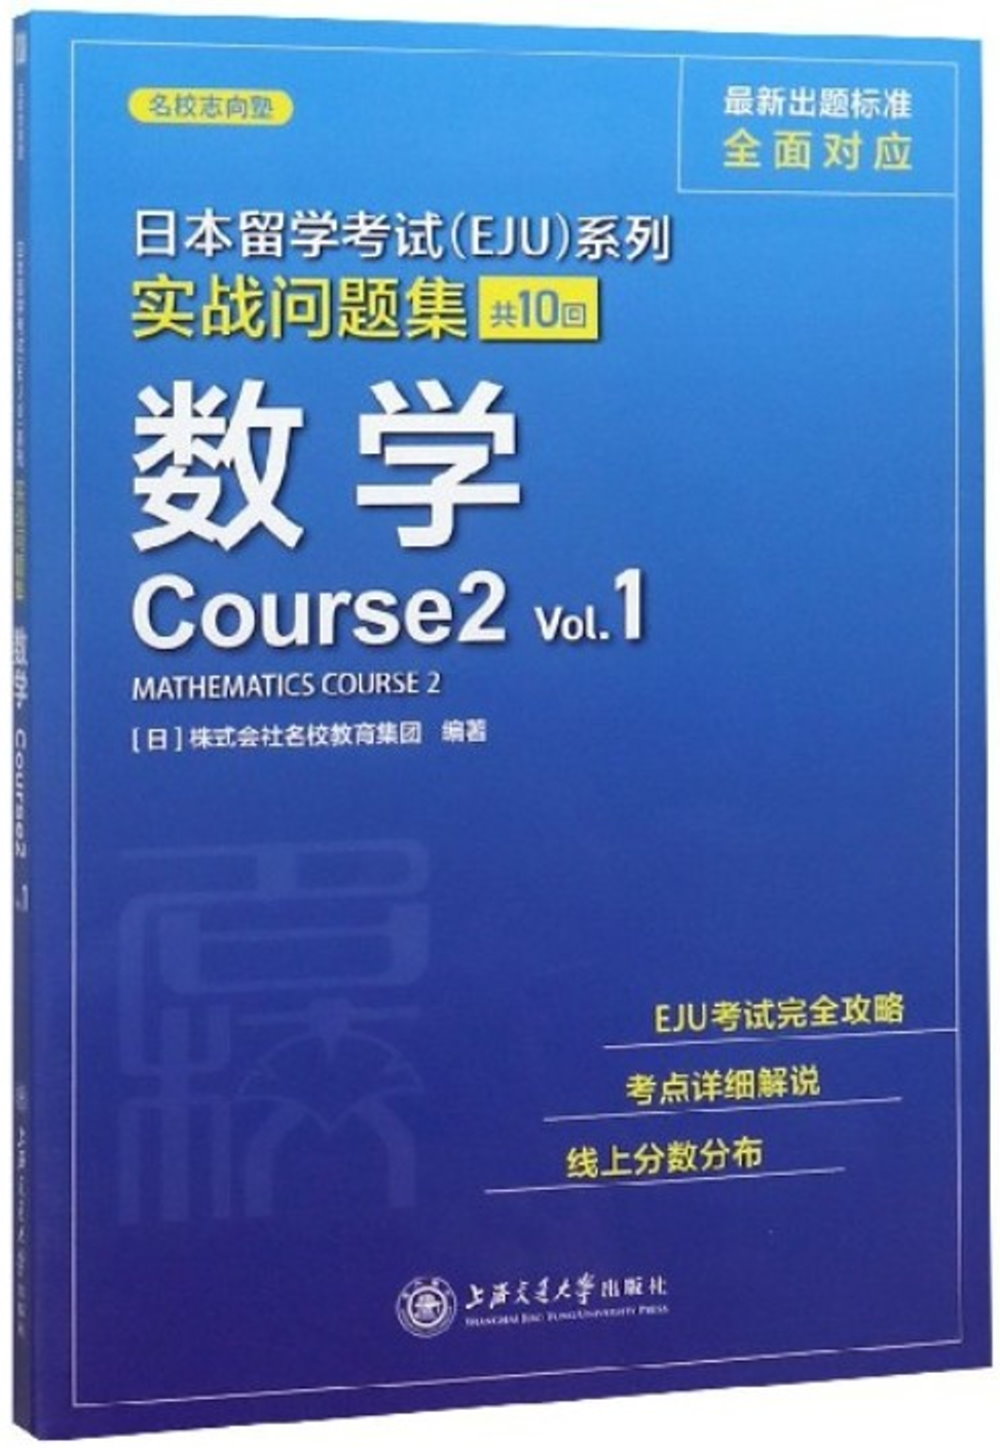 日本留學考試（EJU）系列實戰問題集：數學（Course2 Vol.1）